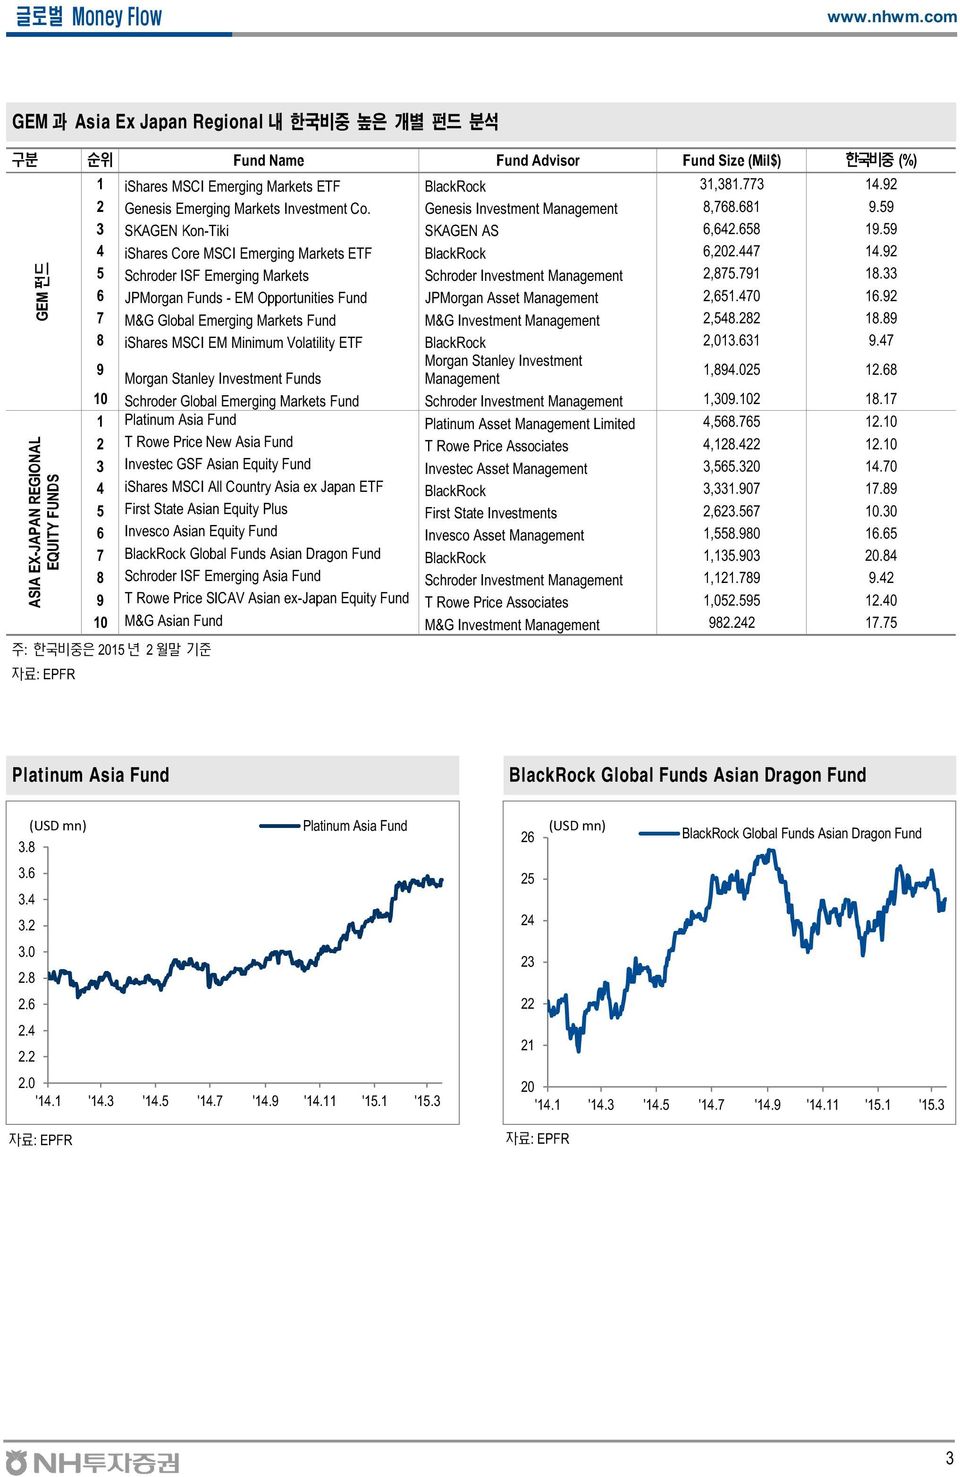 447 14.92 5 Schroder ISF Emerging Markets Schroder Investment Management 2,875.791 18.33 6 JPMorgan Funds - EM Opportunities Fund JPMorgan Asset Management 2,651.47 16.